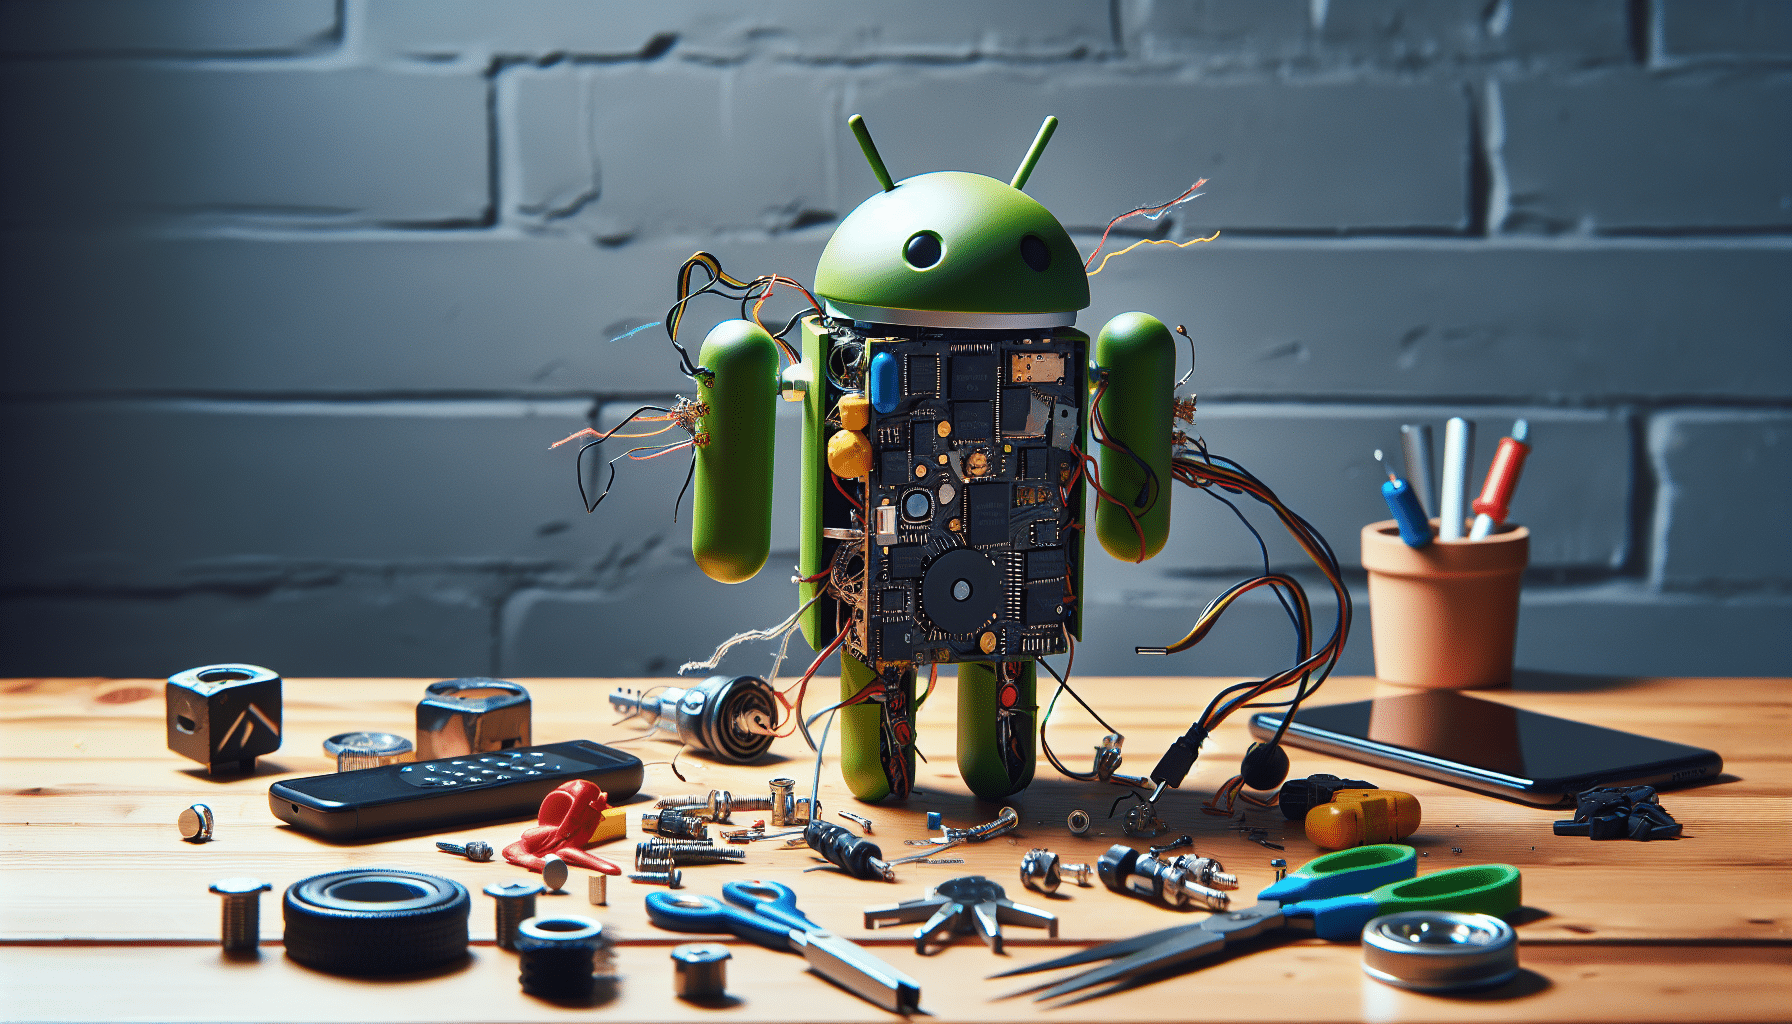 découvrez la nouvelle faille android et comment elle pourrait affecter votre appareil. restez informé sur les dernières actualités en matière de sécurité mobile.